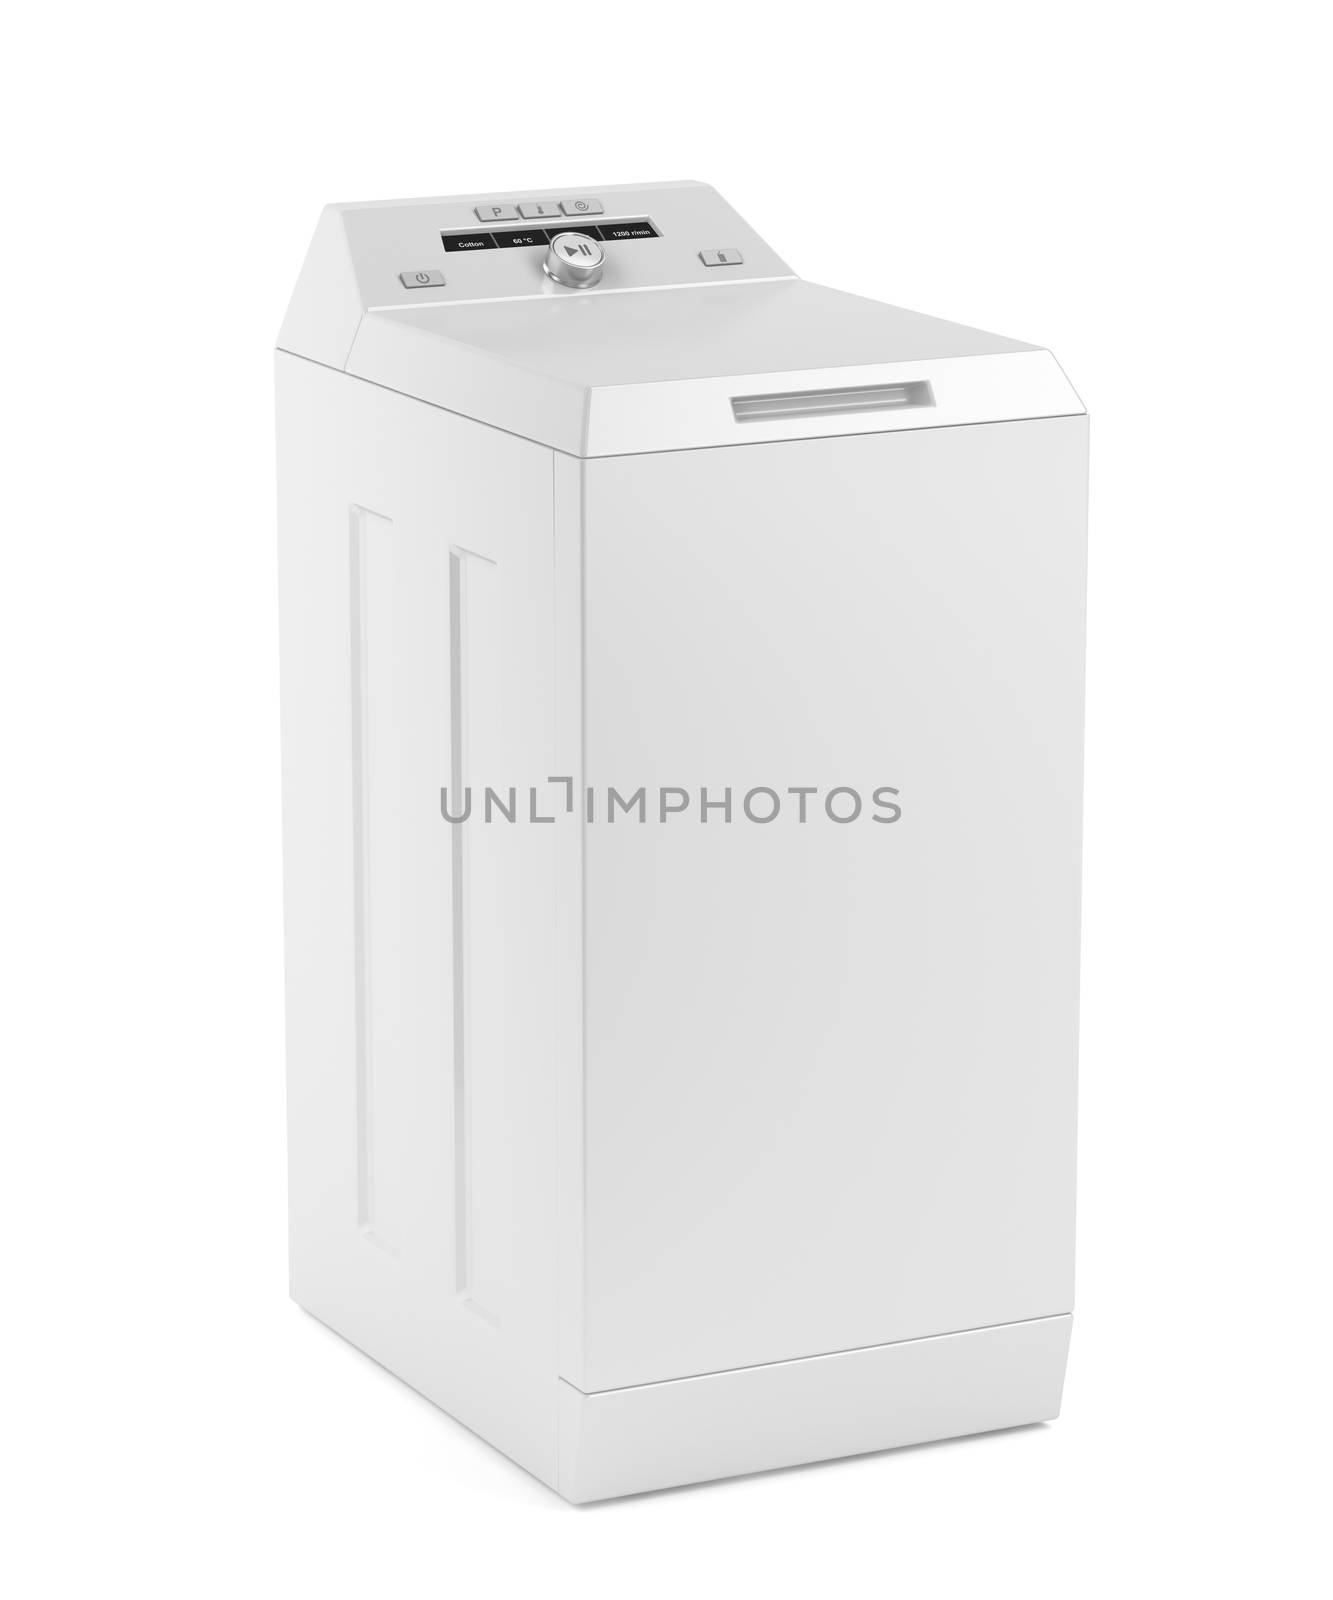 Top loading washing machine on white background